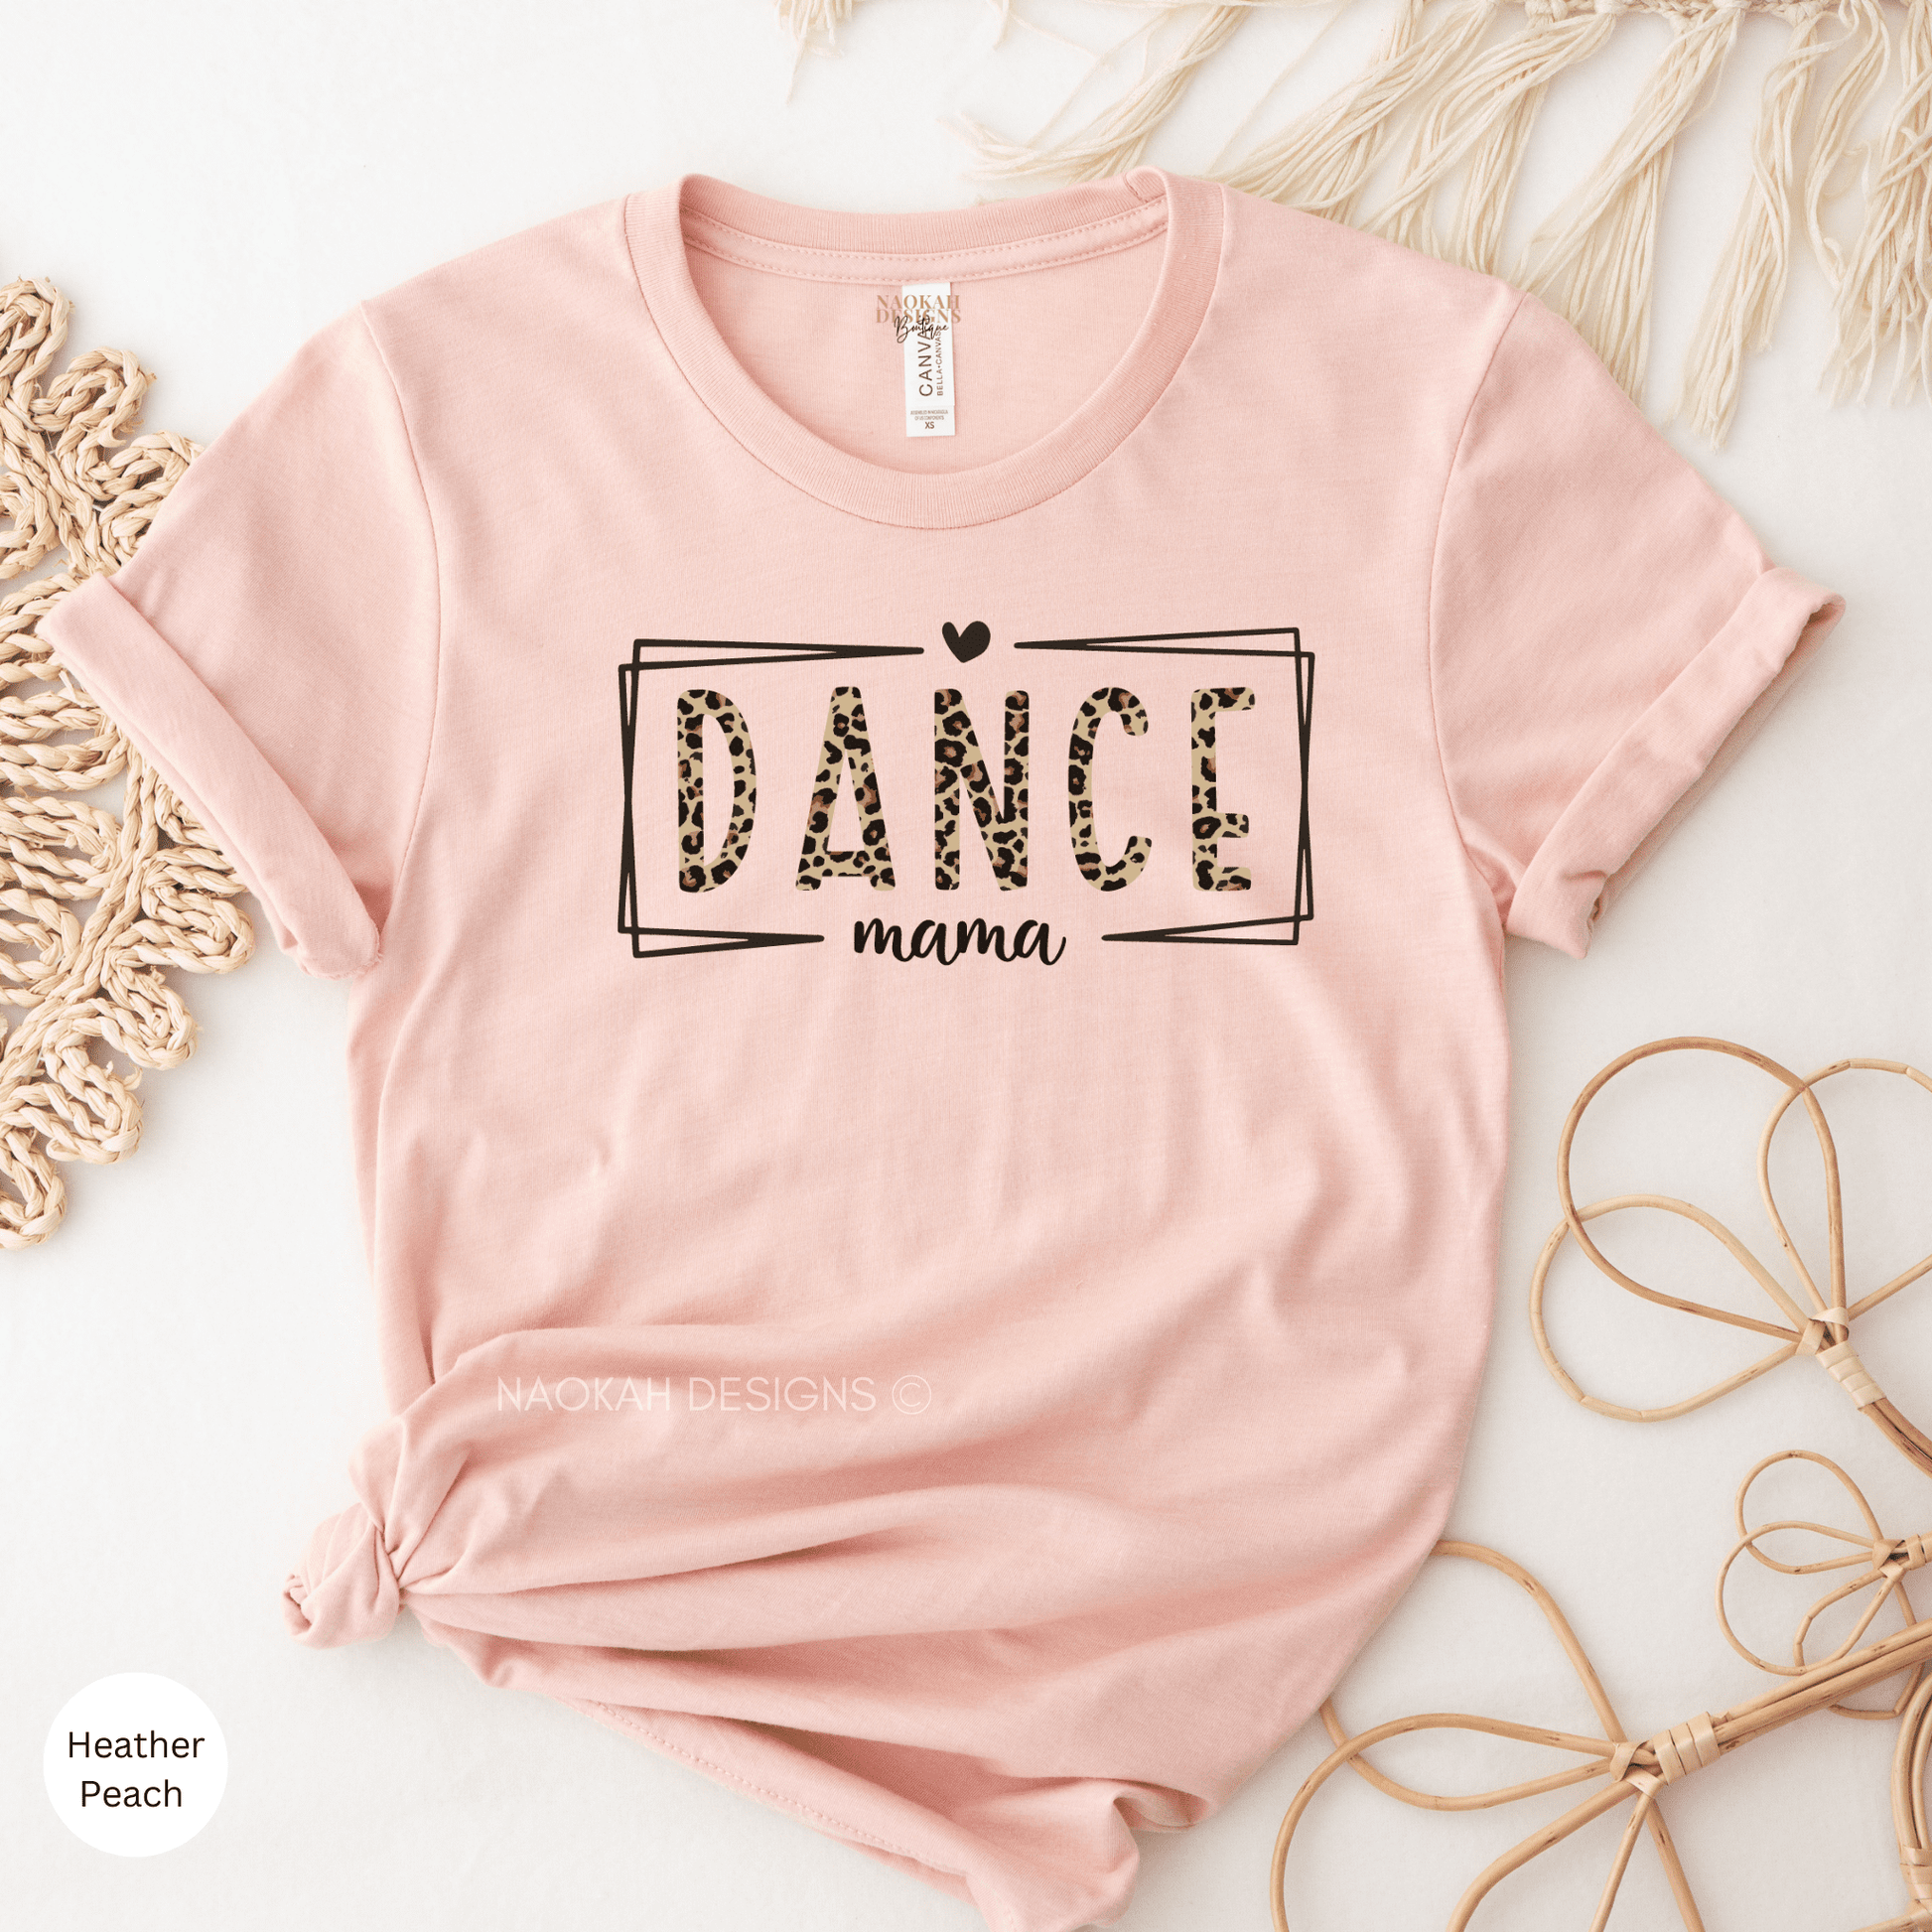 Dance Mama Shirt, Dance Mom Shirt, Dance Mom Gift, Ballet Mom, Dance Competition Shirt, Dance Recital Shirt, Tap Mom, Hip Hop Dance Shirt